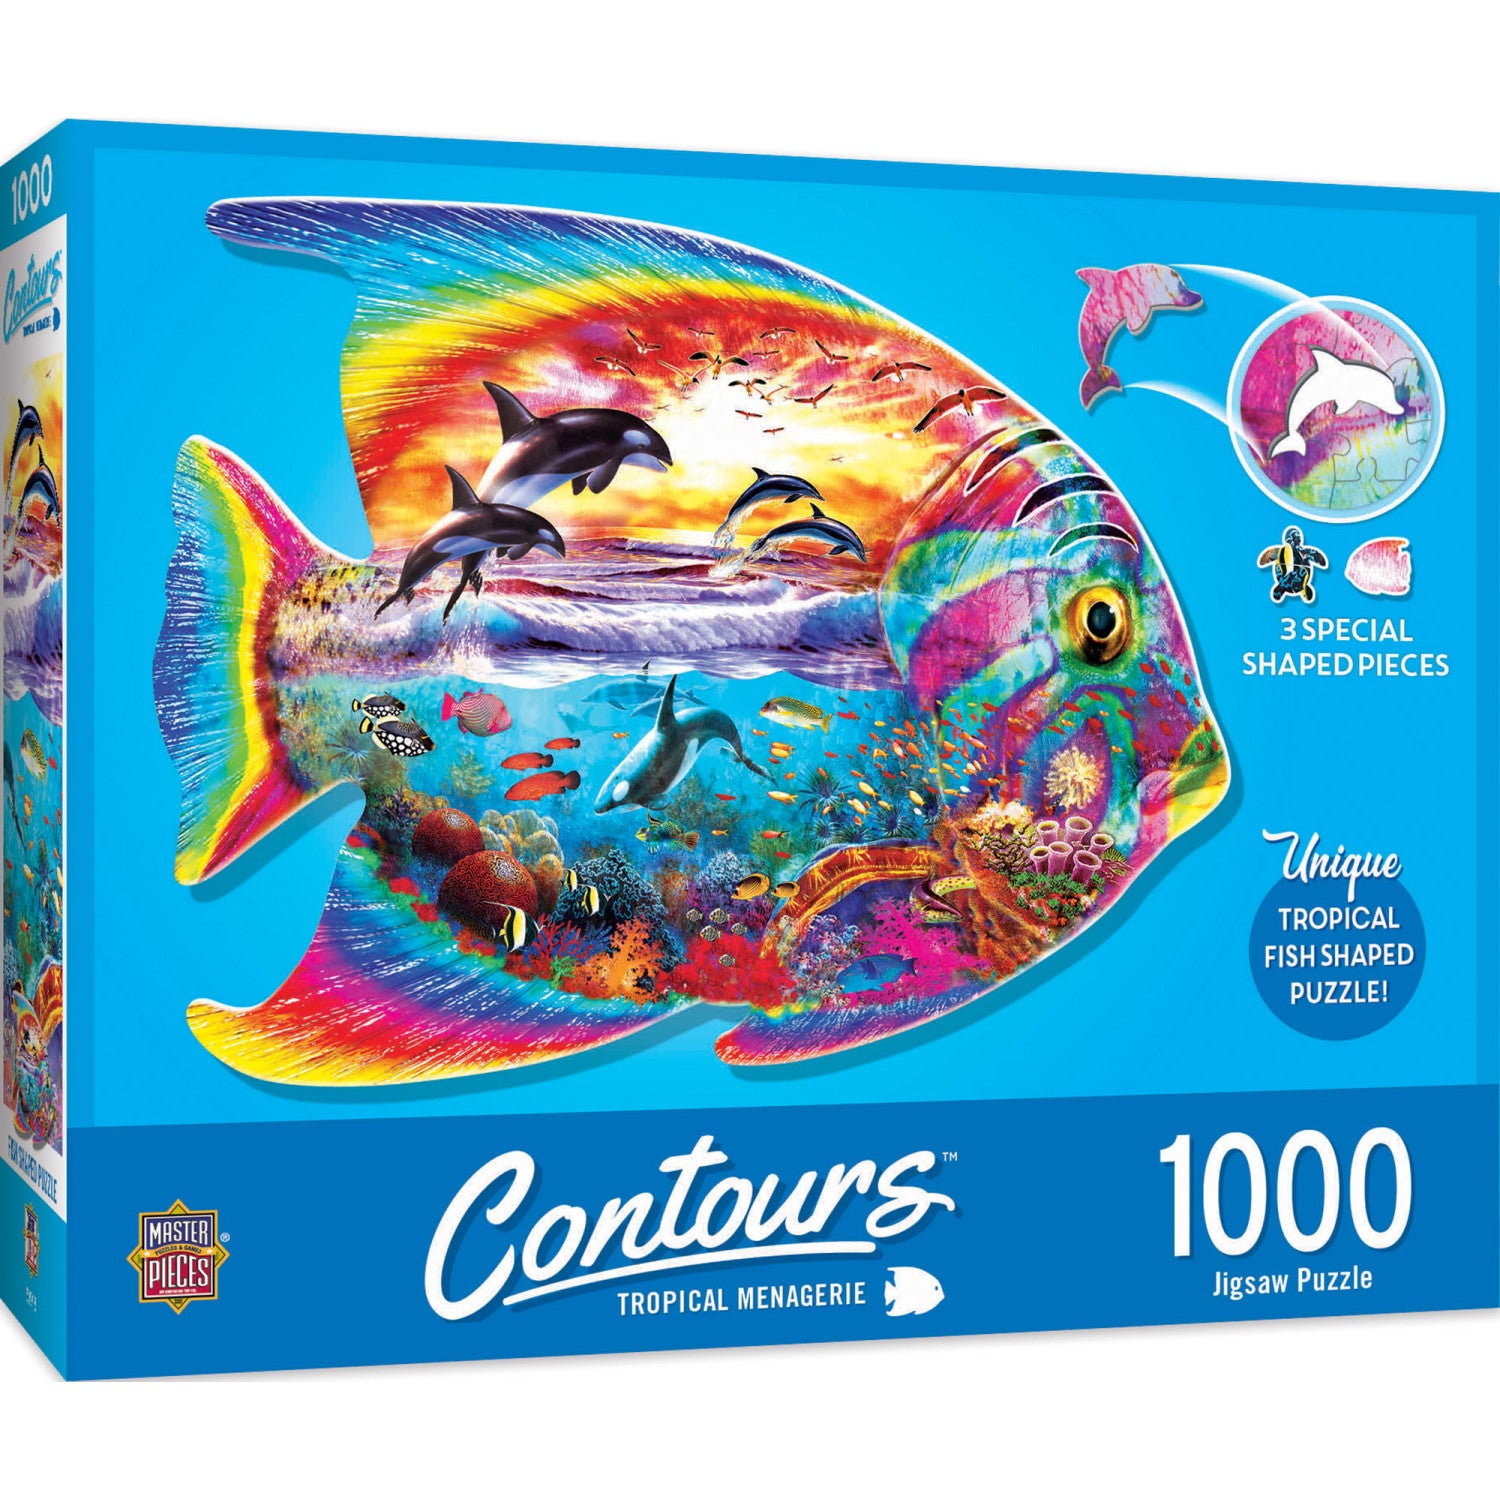 Contours - Tropical Menagerie 1000 Piece Shaped Puzzle